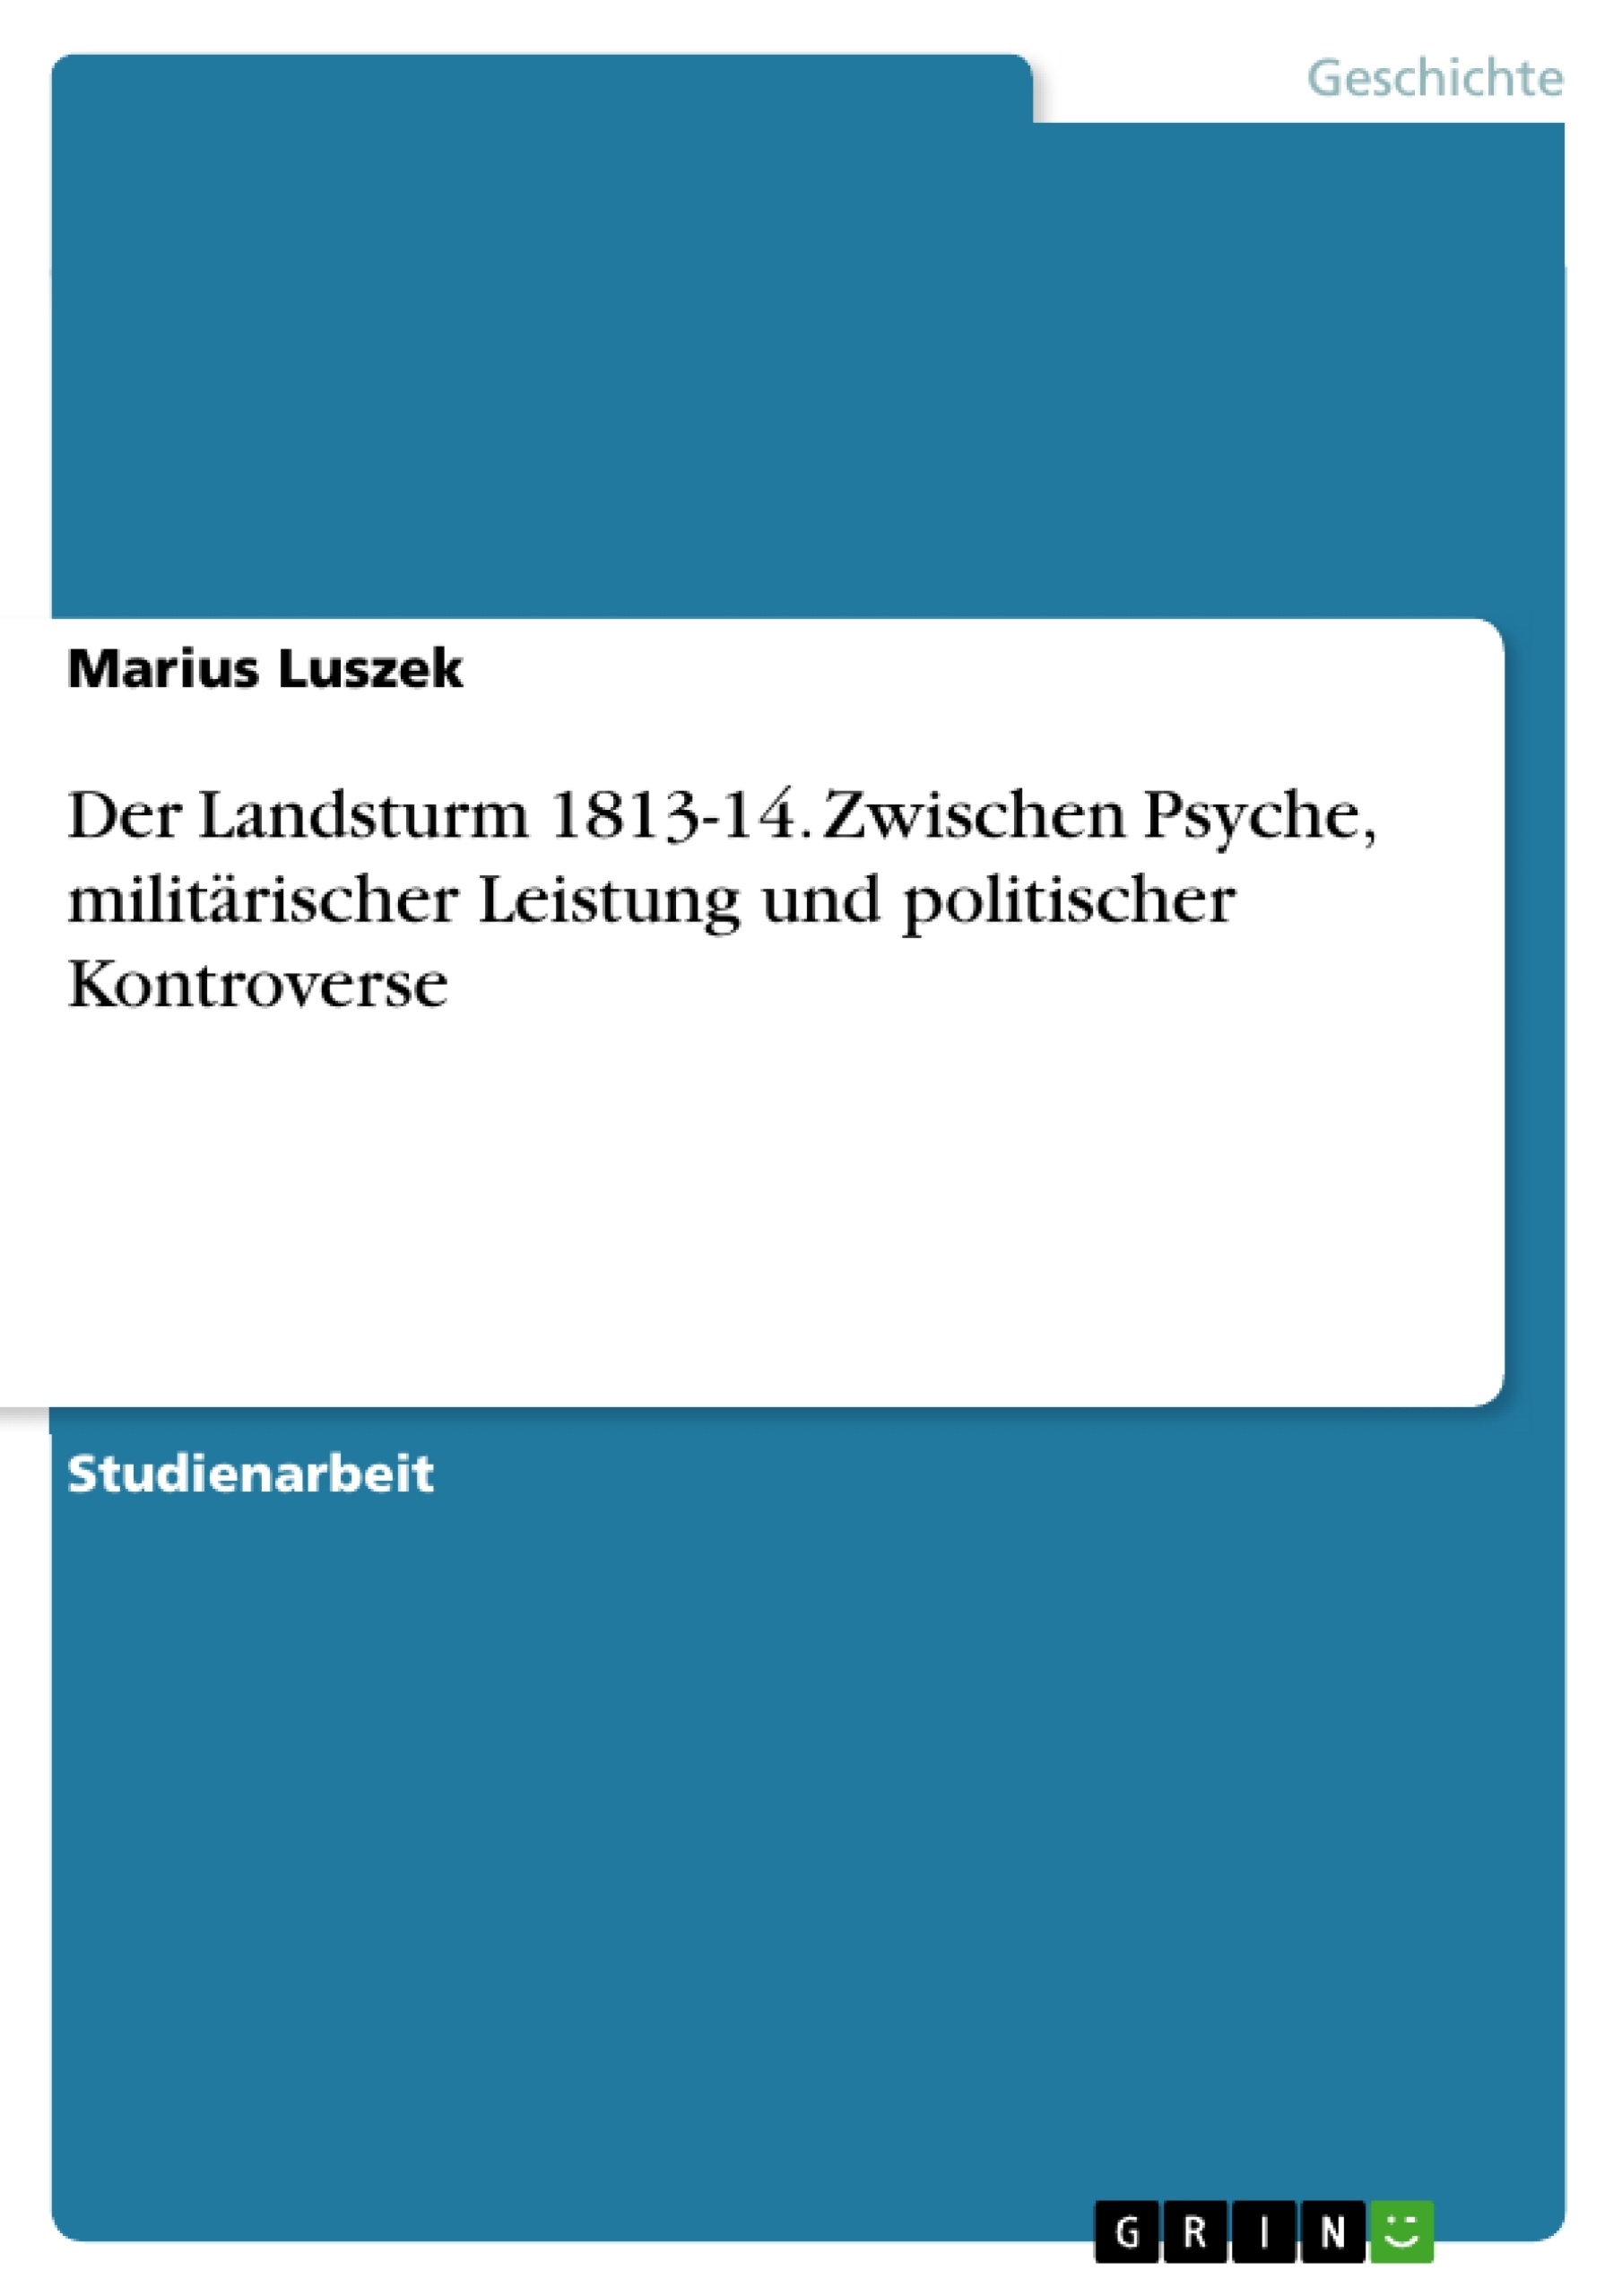 Title: Der Landsturm 1813-14. Zwischen Psyche, militärischer Leistung und politischer Kontroverse